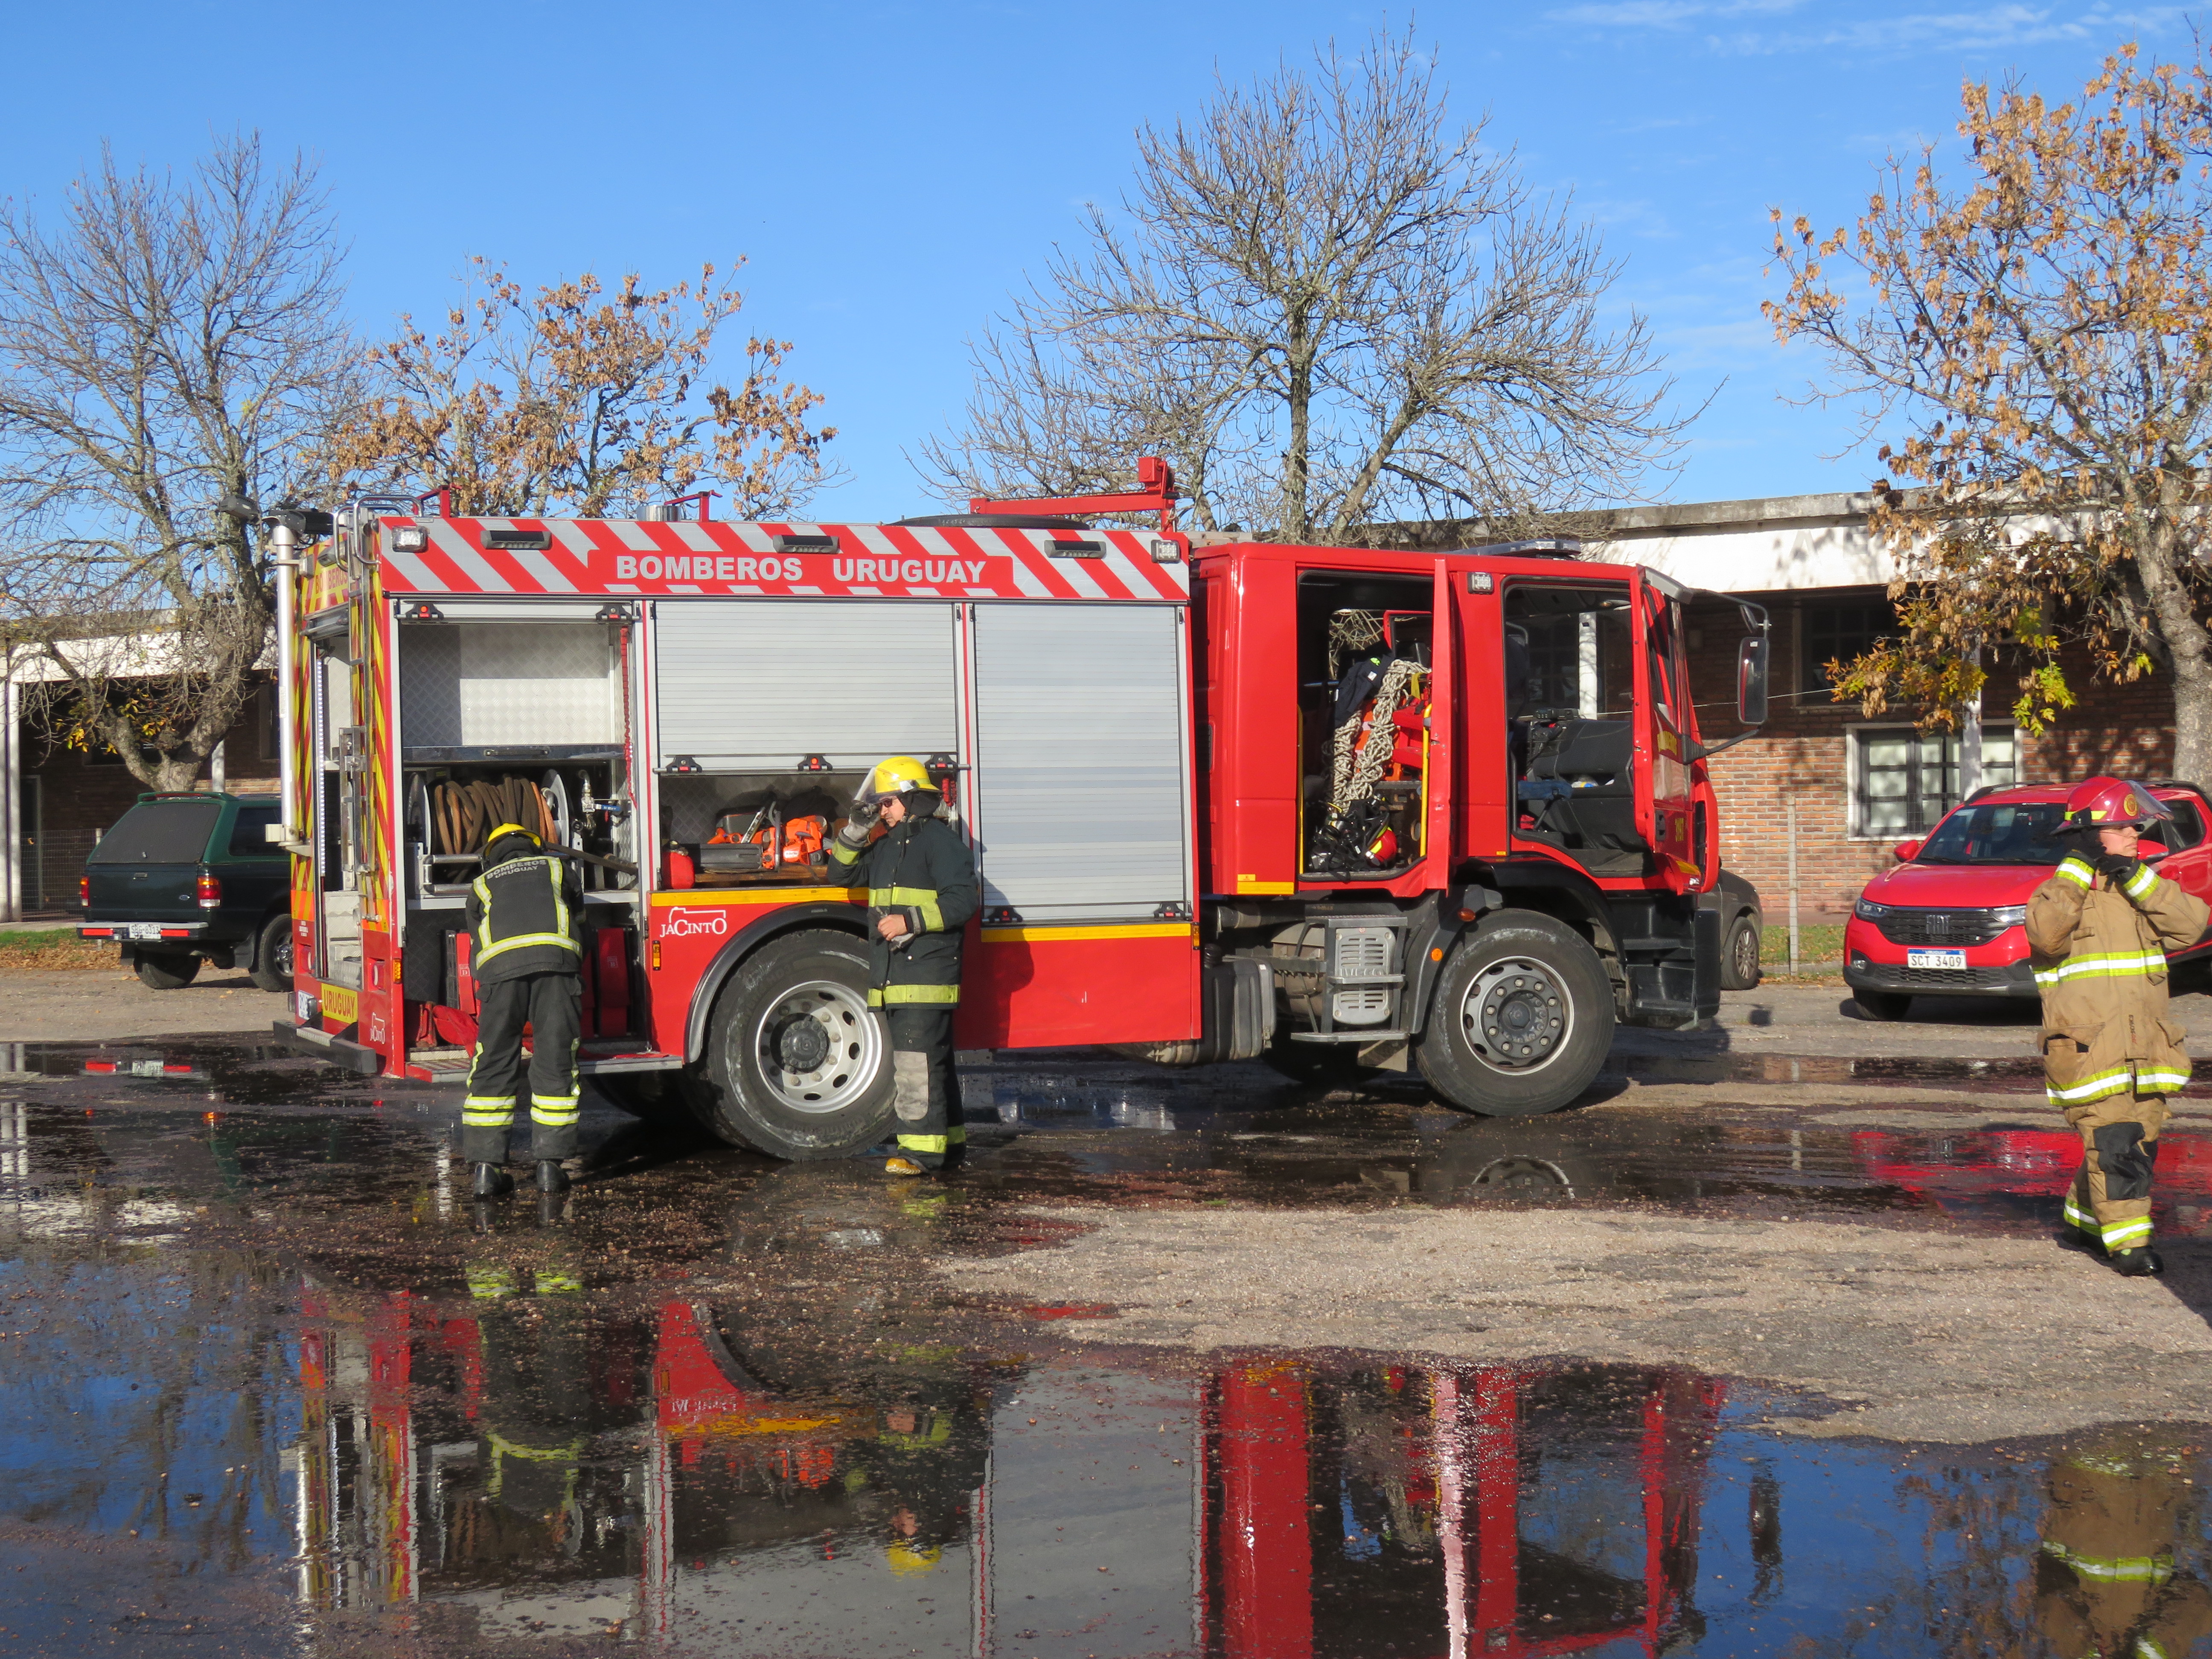 IMG_20230511_3946.jpg - El pasado jueves 11 de mayo culminó la &#034;Capacitación para bomberos sobre manejo de incidentes relacionados con la movilidad eléctrica&#034; en donde se capacitaron a 25 bomberos en la Base Aérea de Santa Bernardina del departamento de Durazno. Esta capacitación es la continuación del primer curso regional que organizó la plataforma MOVE del Programa de la Naciones Unidas para el Medio Ambiente a finales de 2022 en Paraguay, donde participaron y se formaron dos bomberos instructores de Uruguay.